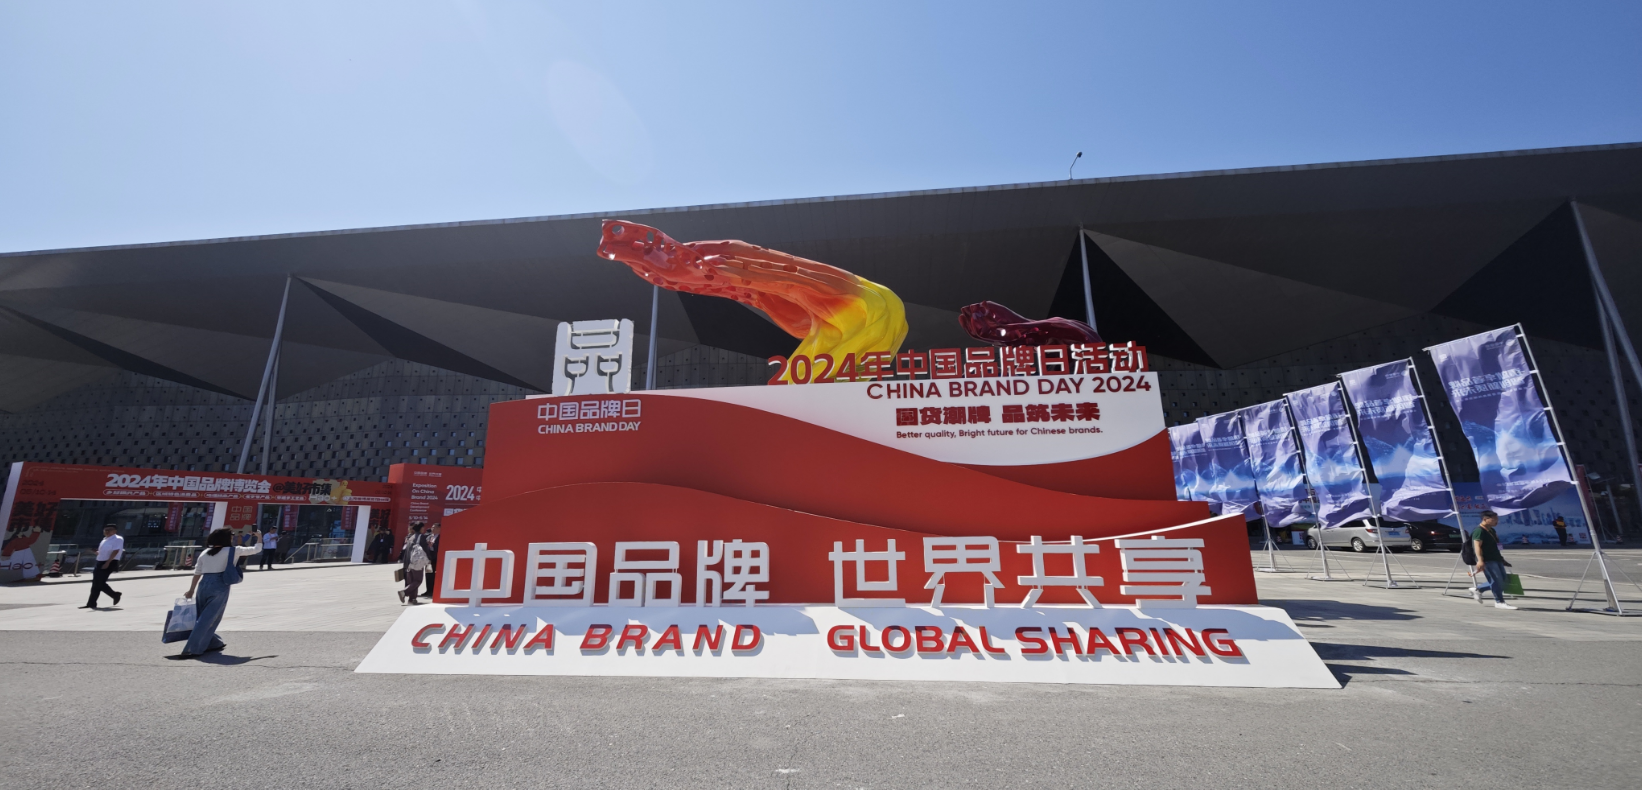 2024年中国品牌日活动于5月10日至14日在上海世博展览馆举行。人民网记者 许维娜摄